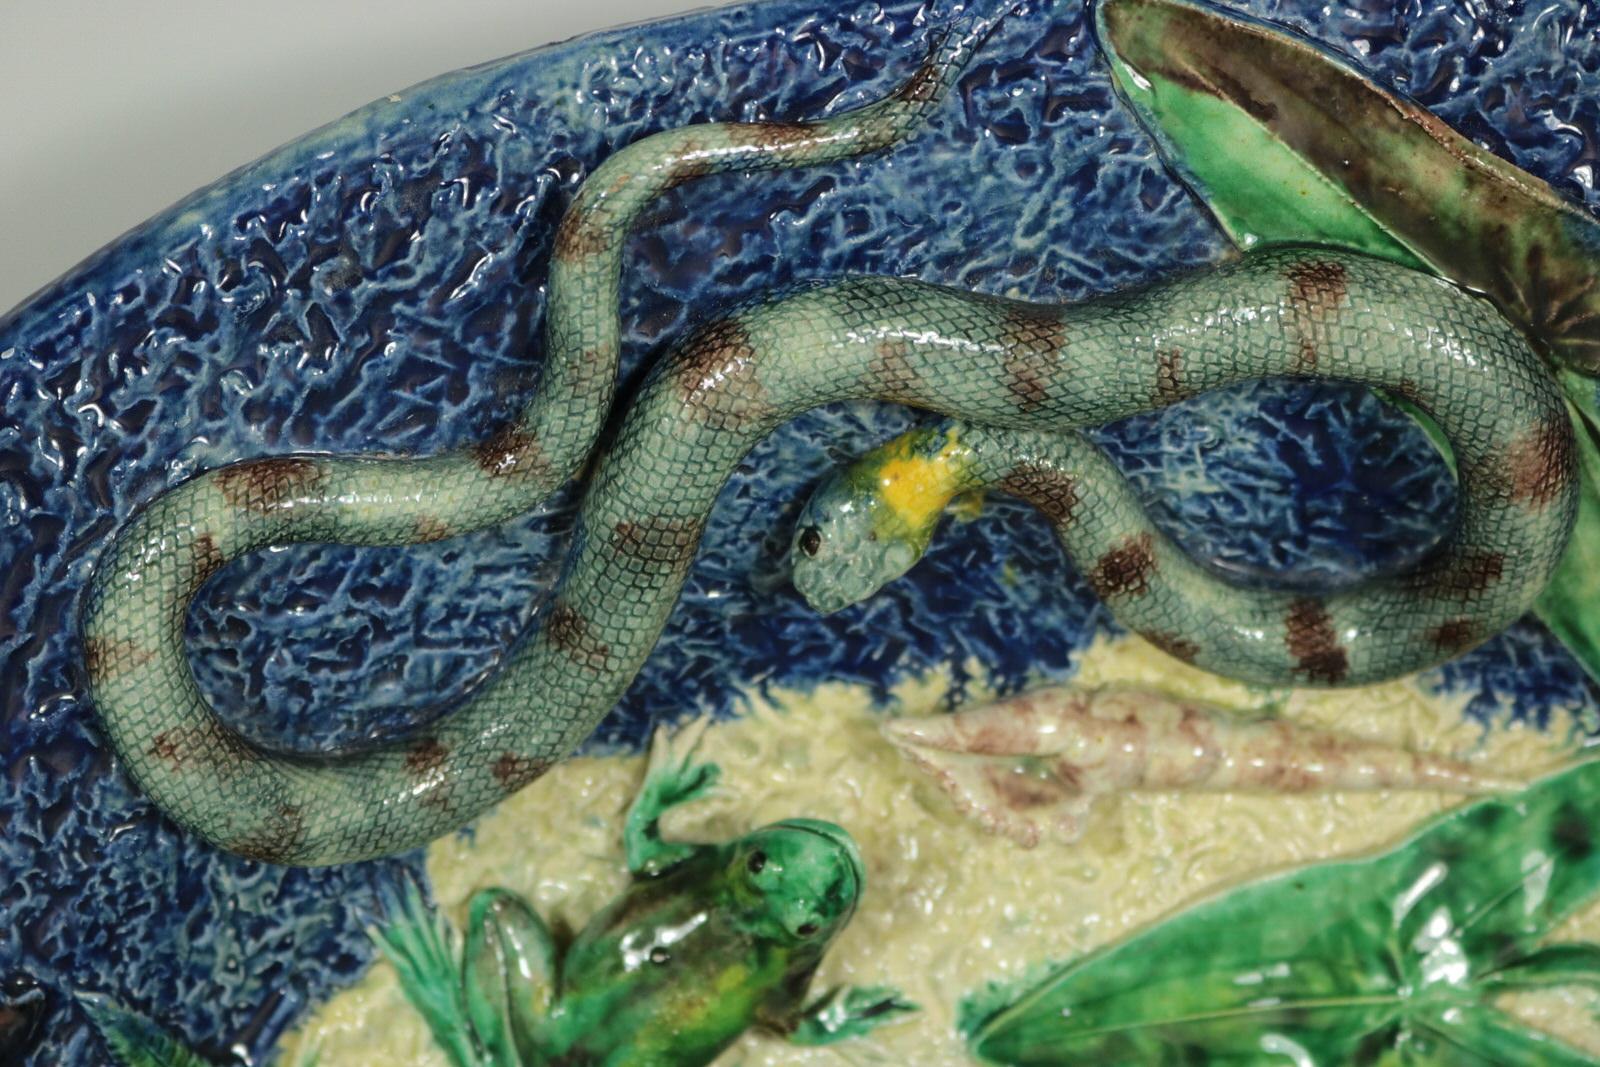 Barbizet Französisch Palissy Majolika Wandteller, die Fische (einschließlich eines Hechts), eine Schlange, eine Eidechse, ein Frosch, eine Schildkröte, Insekten, Muscheln Brombeeren und Blätter zeigt. Färbung: blau, grün, cremefarben, sind